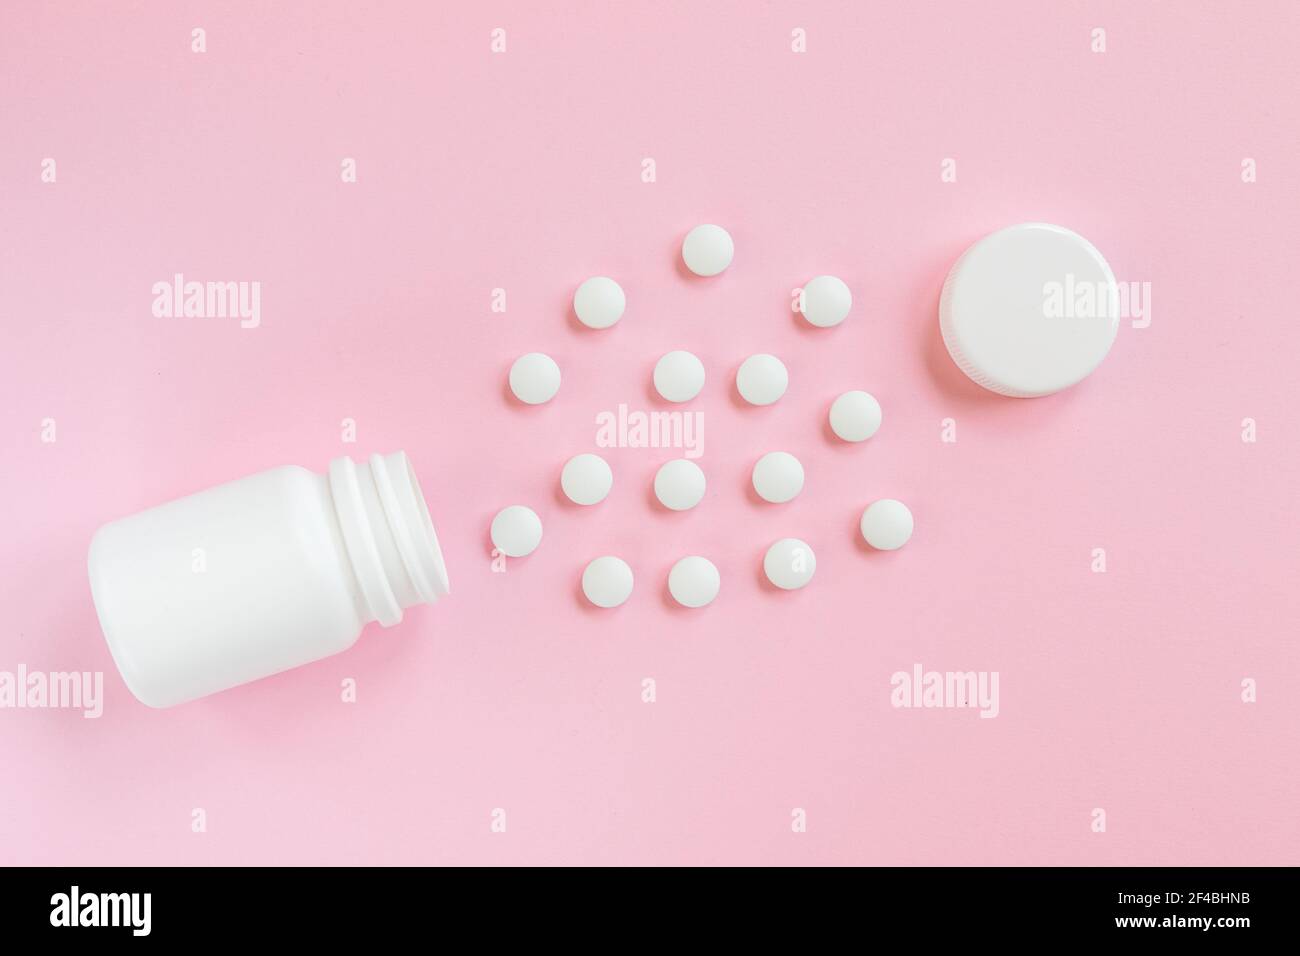 Weißes Glas und verstreute weiße Pillen auf einem rosa Hintergrund. Medizin und Gesundheitswesen Konzept. Draufsicht Stockfoto